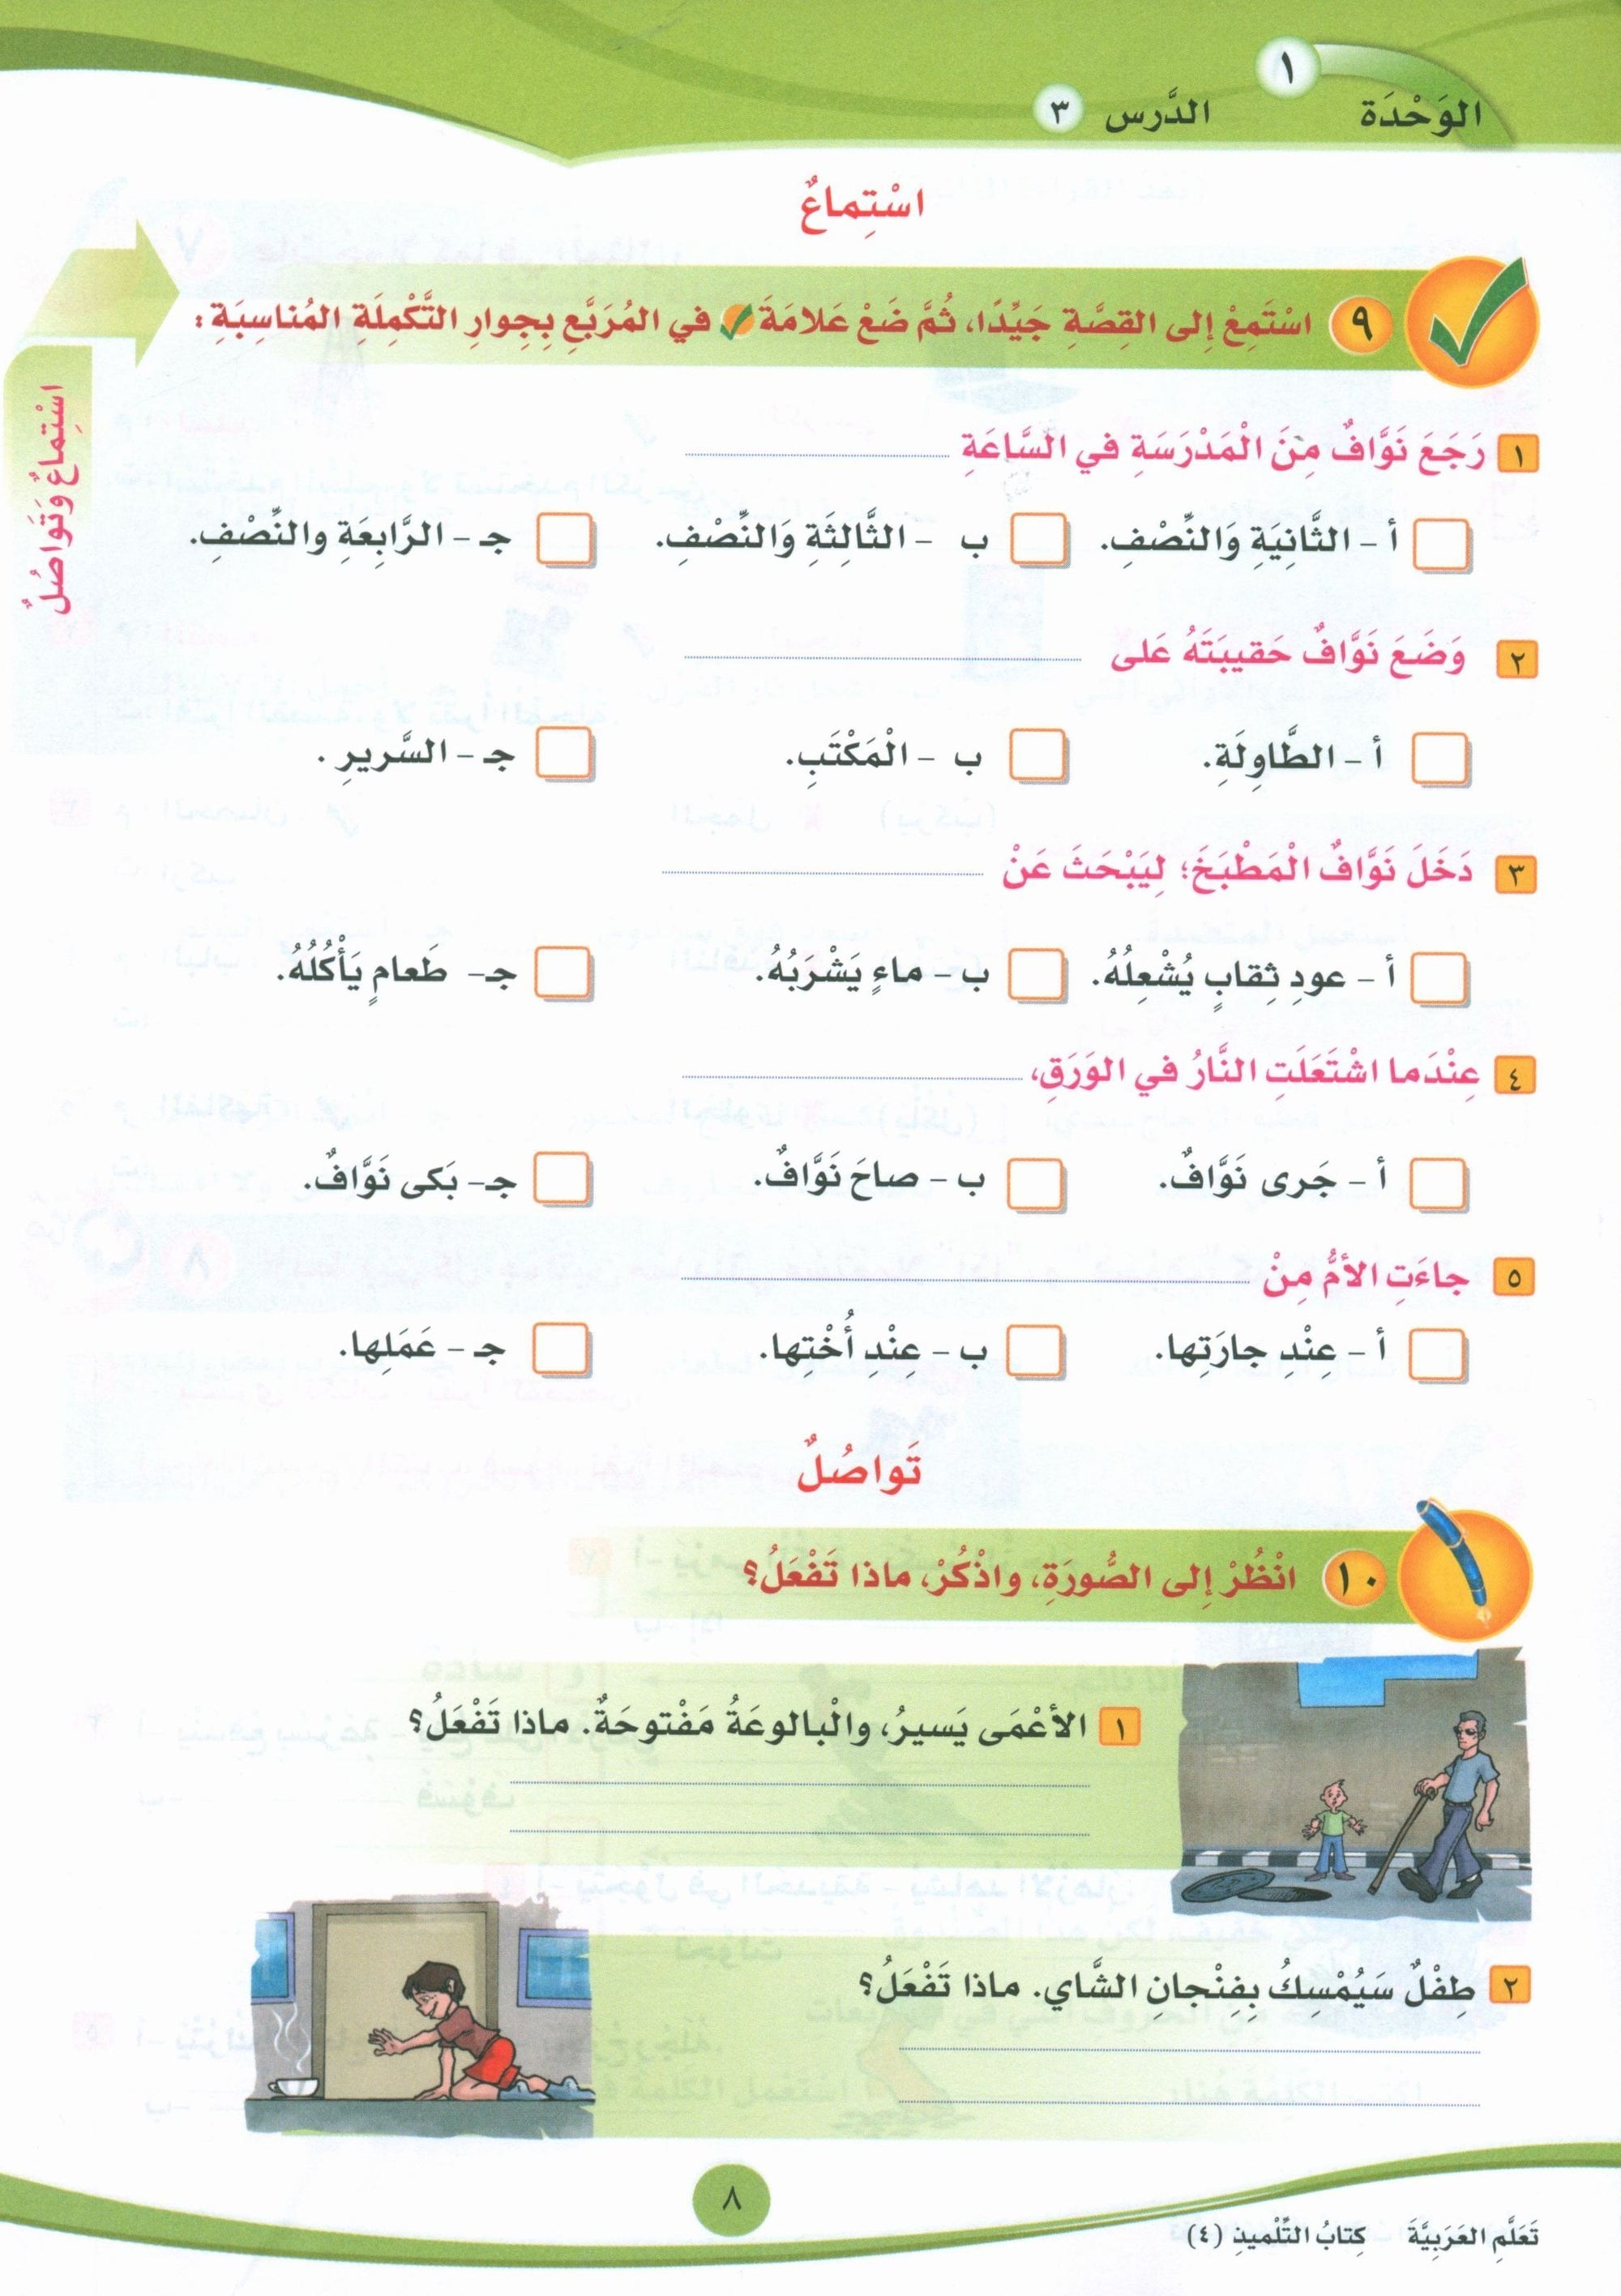 ICO Learn Arabic Textbook Level 4 Part 1 تعلم العربية كتاب التلميذ